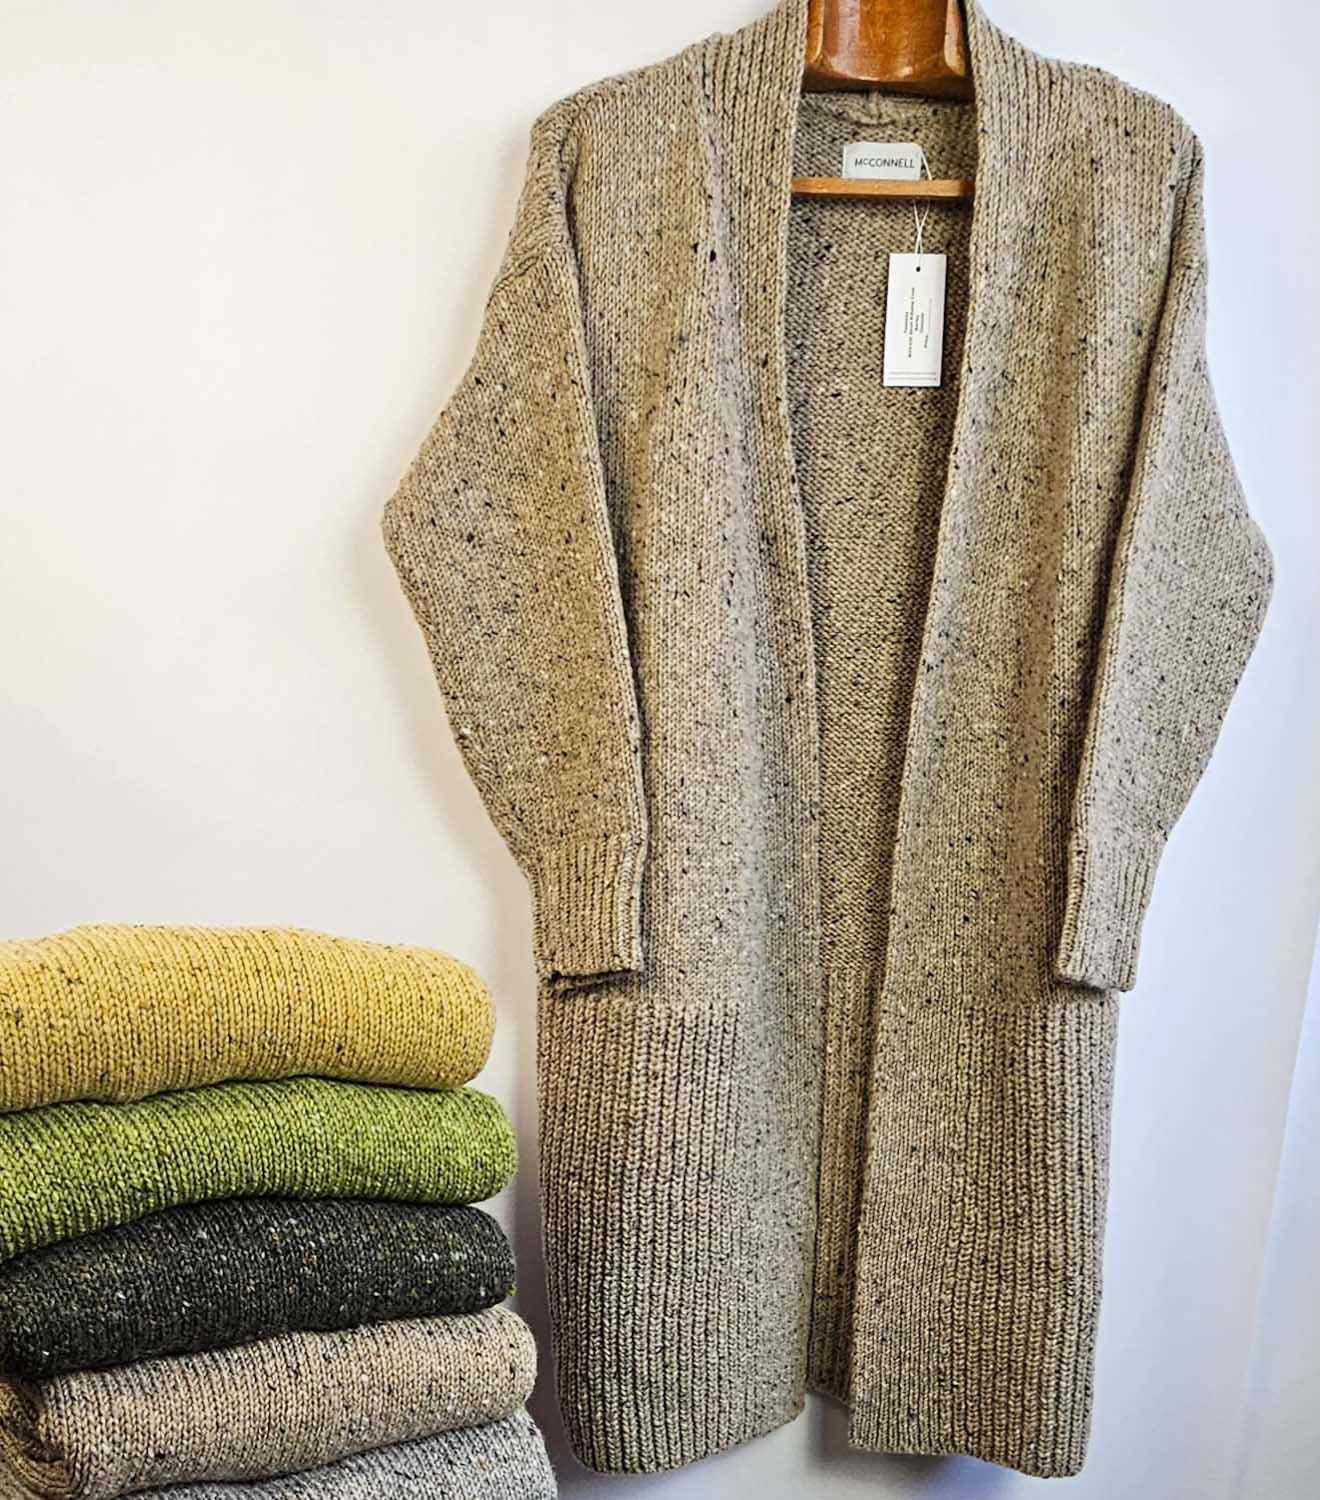 Killaloe Tweed Coat/Cardigan - Barley